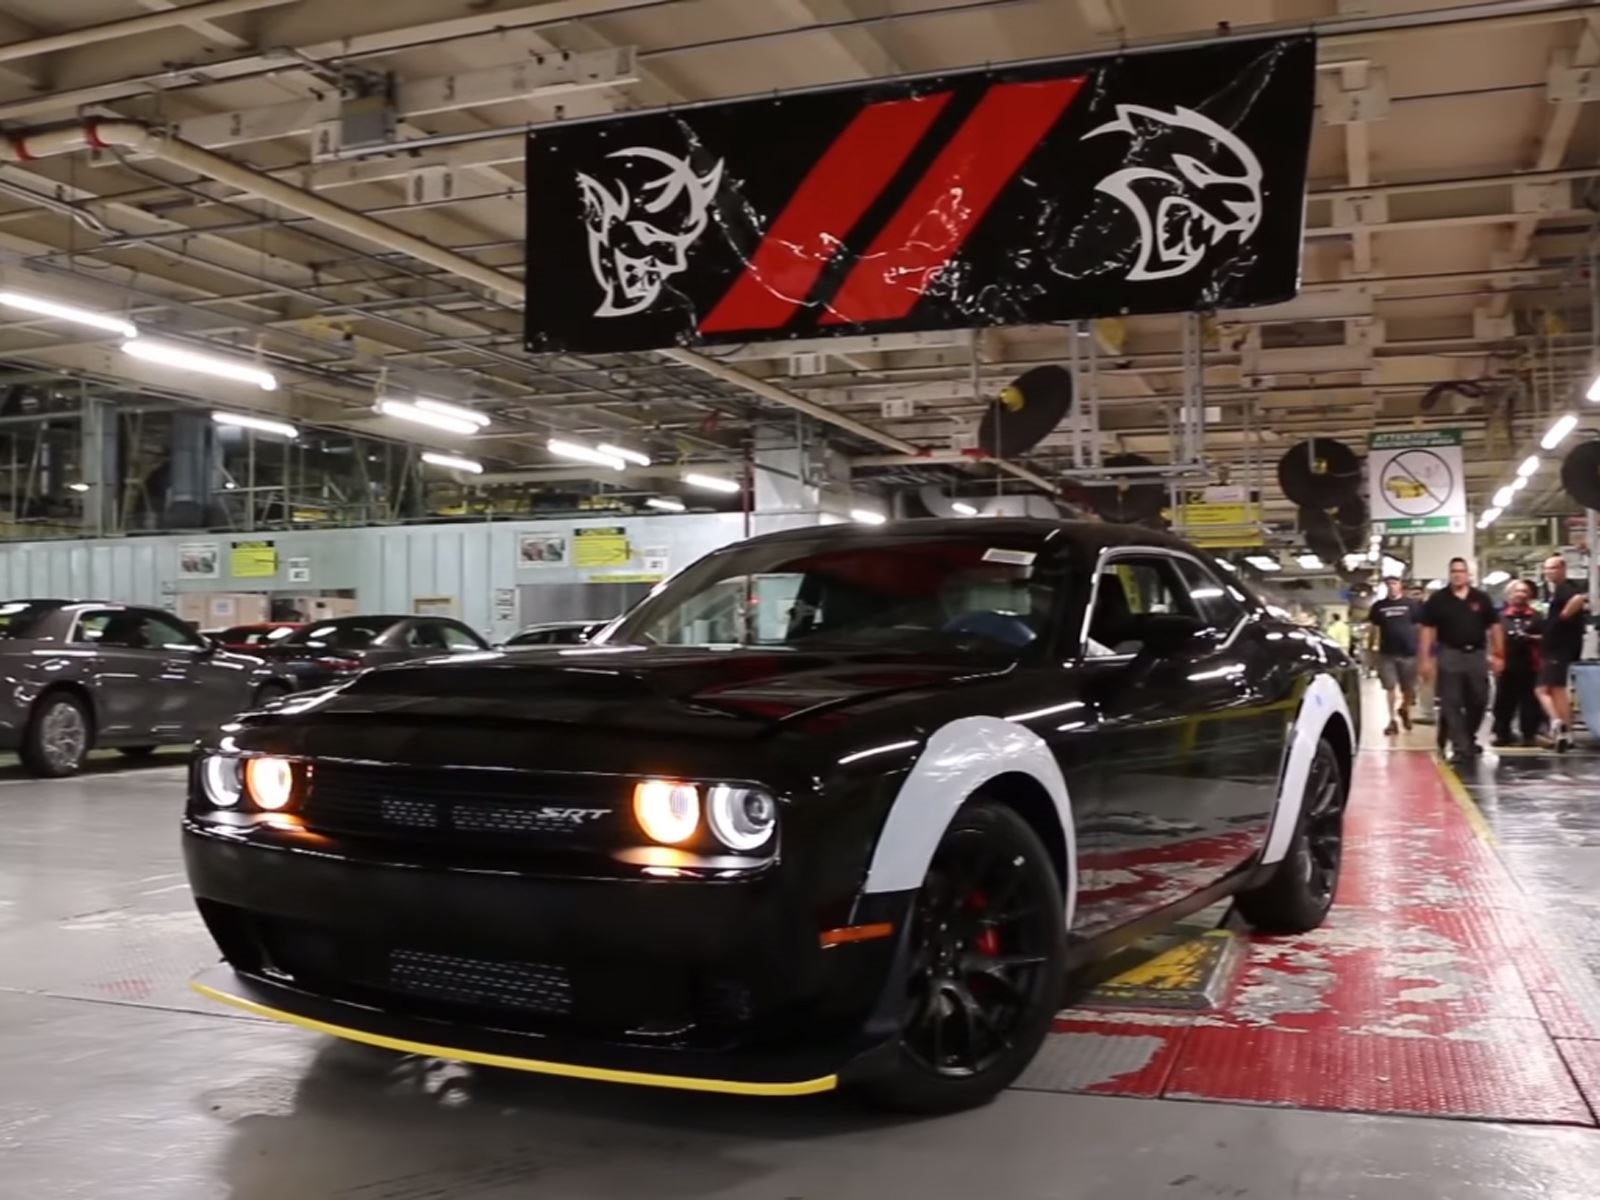 30 мая 2018 года последний Dodge Challenger SRT Demon сошел с конвейерной линии завода Brampton Assembly Plant в Онтарио, Канада. Это ознаменовало окончание производства 3300 экземпляров 840 л.с. легального на дорогах общего пользования спорткара. То